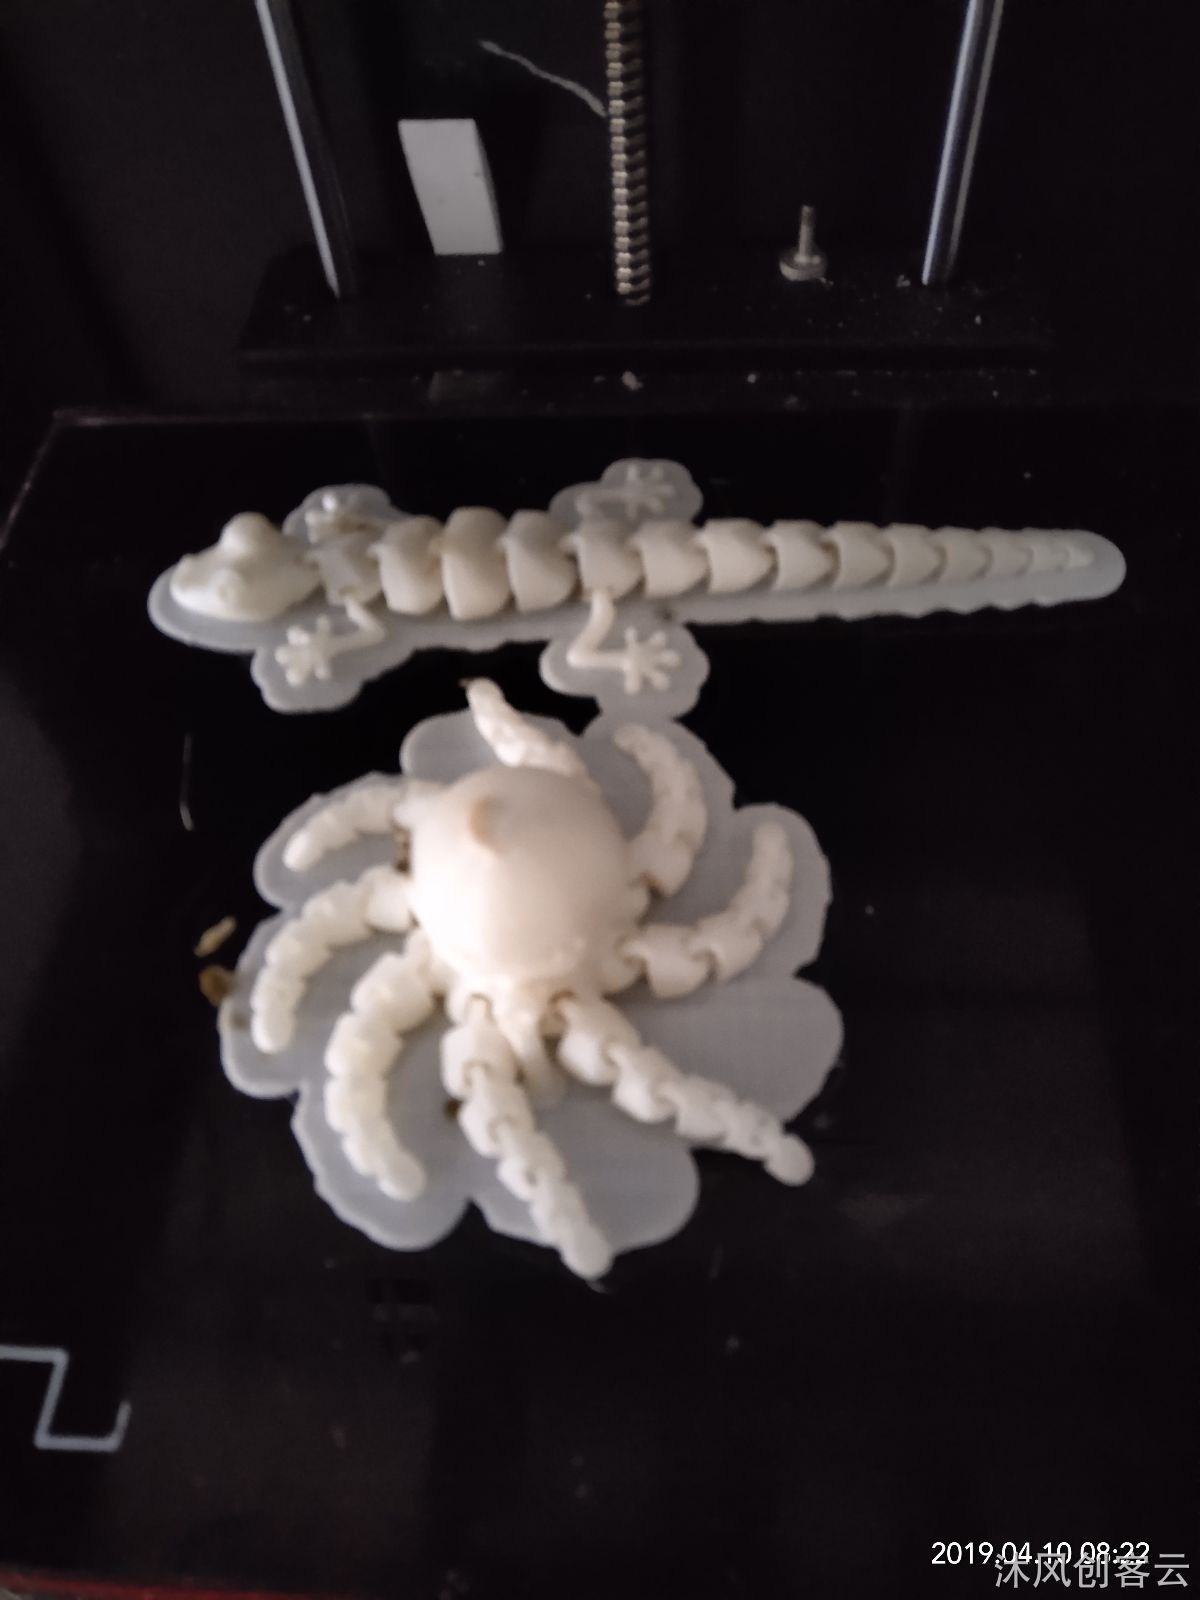 可运动的章鱼模型-3D打印成品-沐风创客云平台